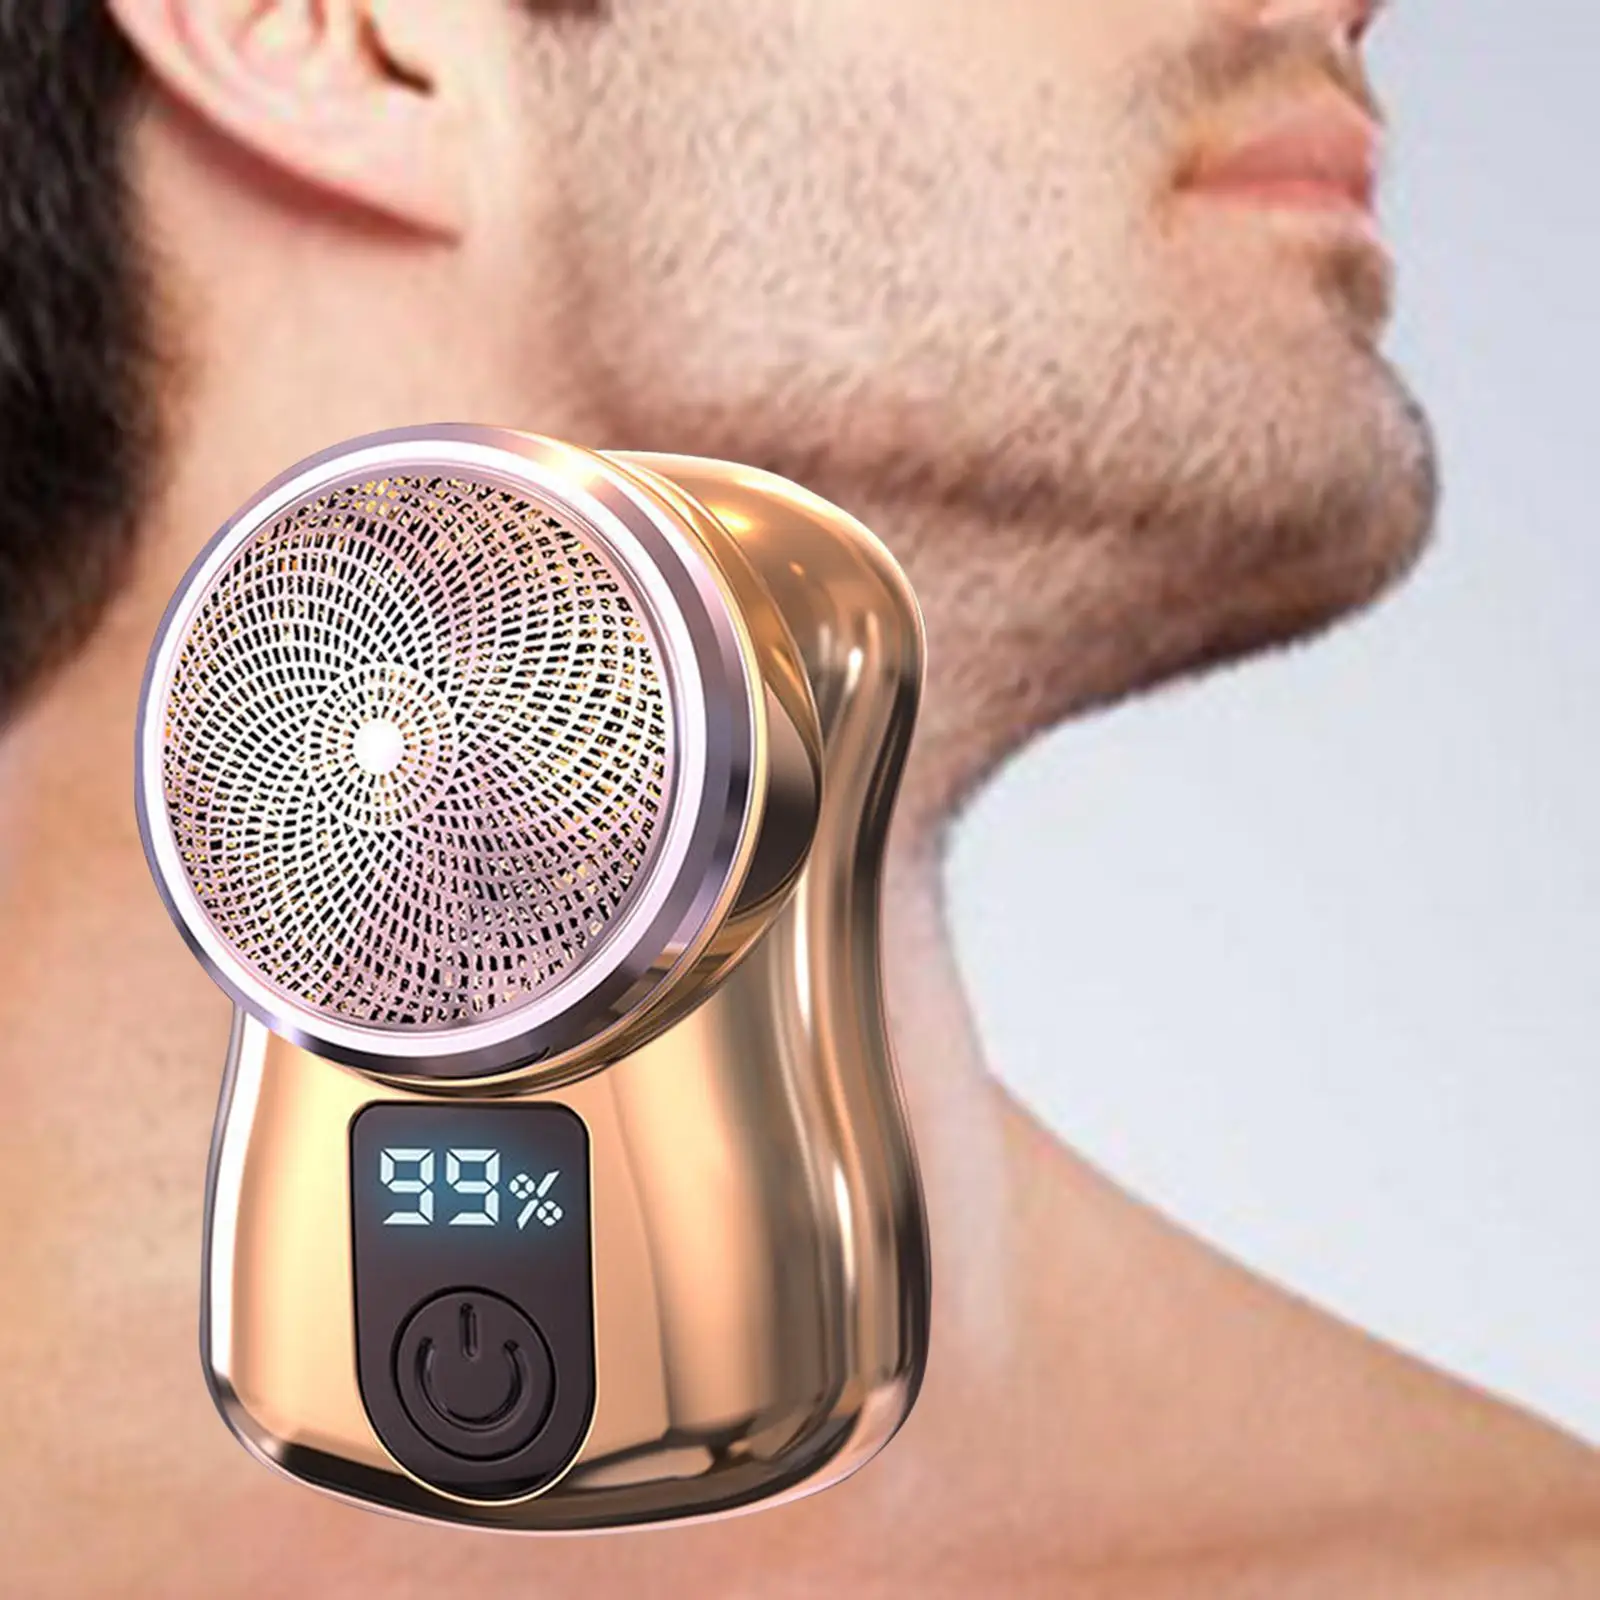 for Men Beard for Travel Digital Display Portable Cordless Shaving Trimmer